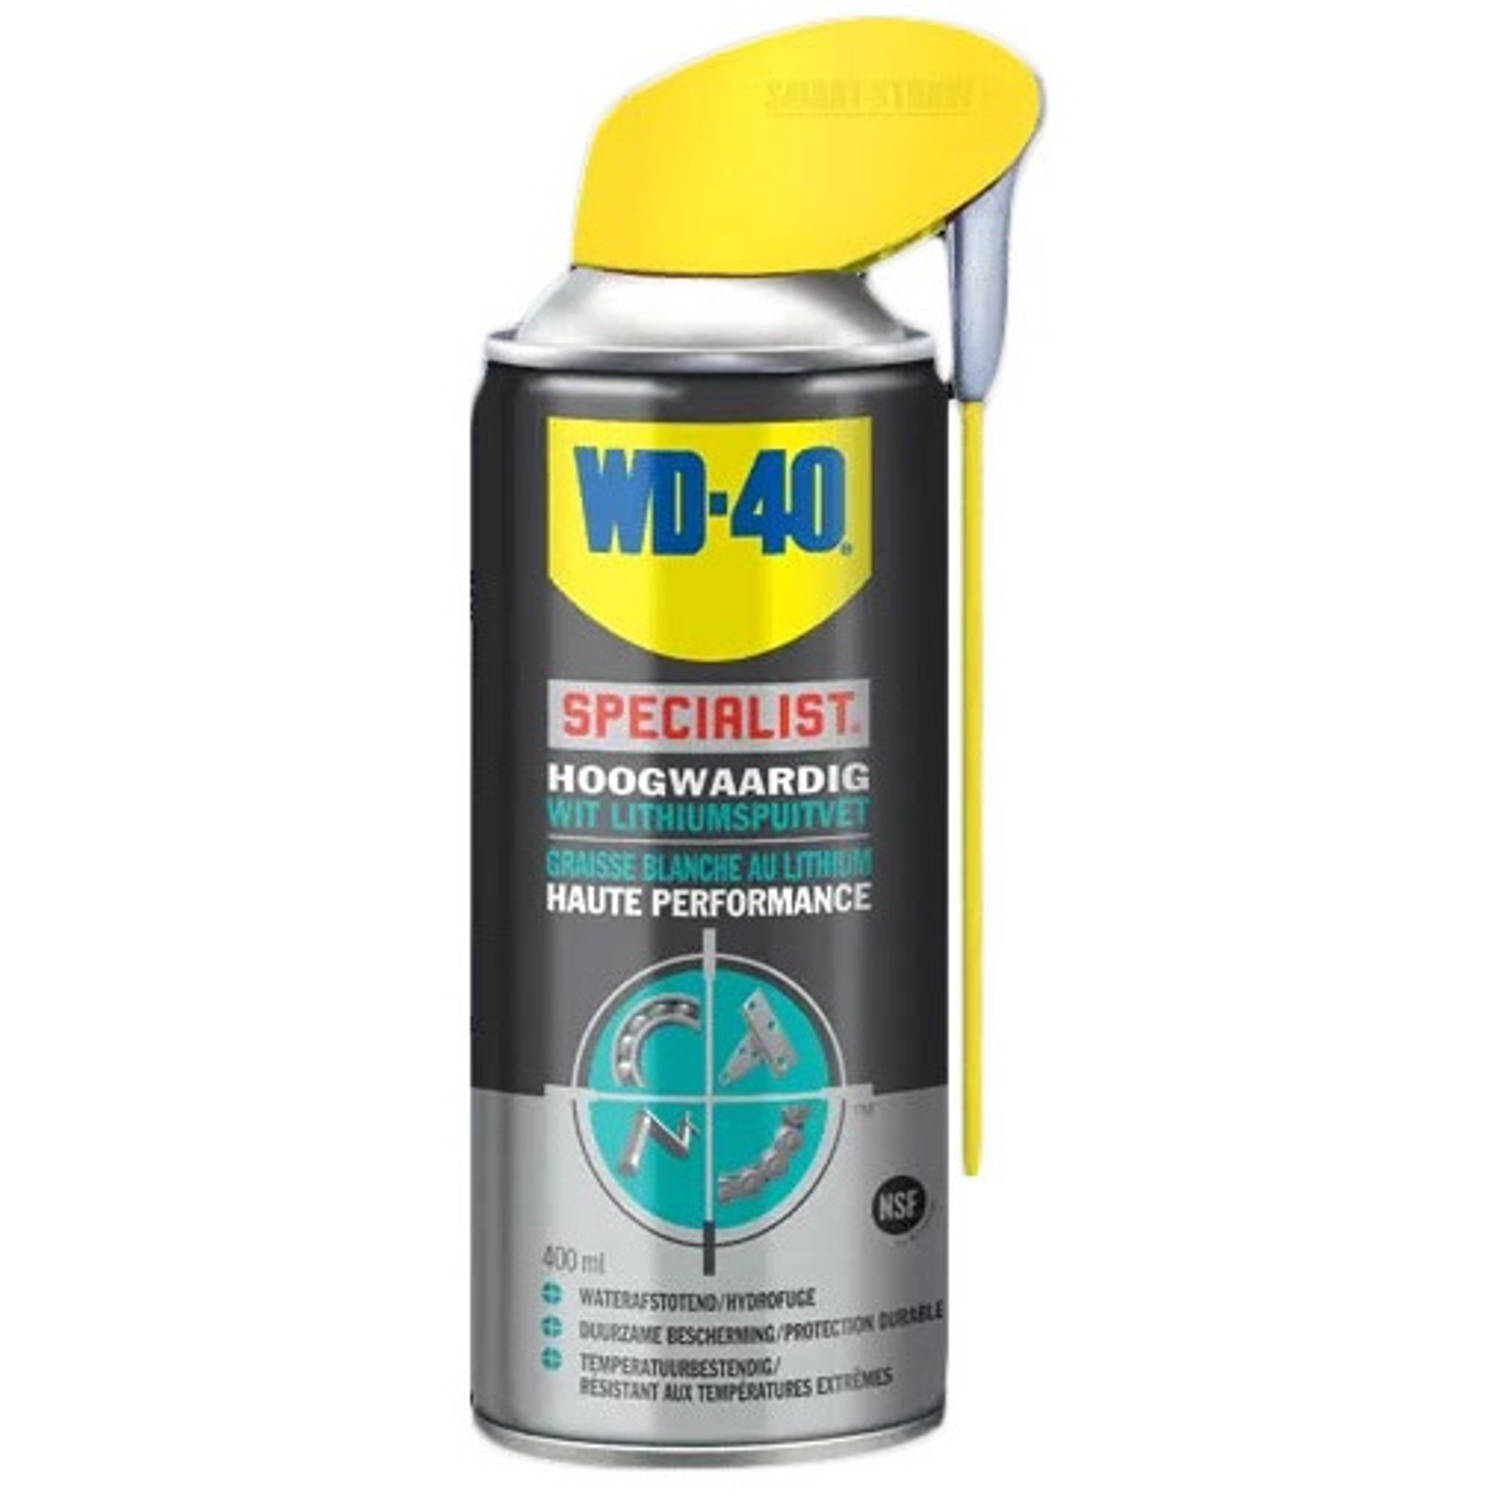 WD 40 Specialist hoogwaardig wit lithiumspuitvet 250 ml